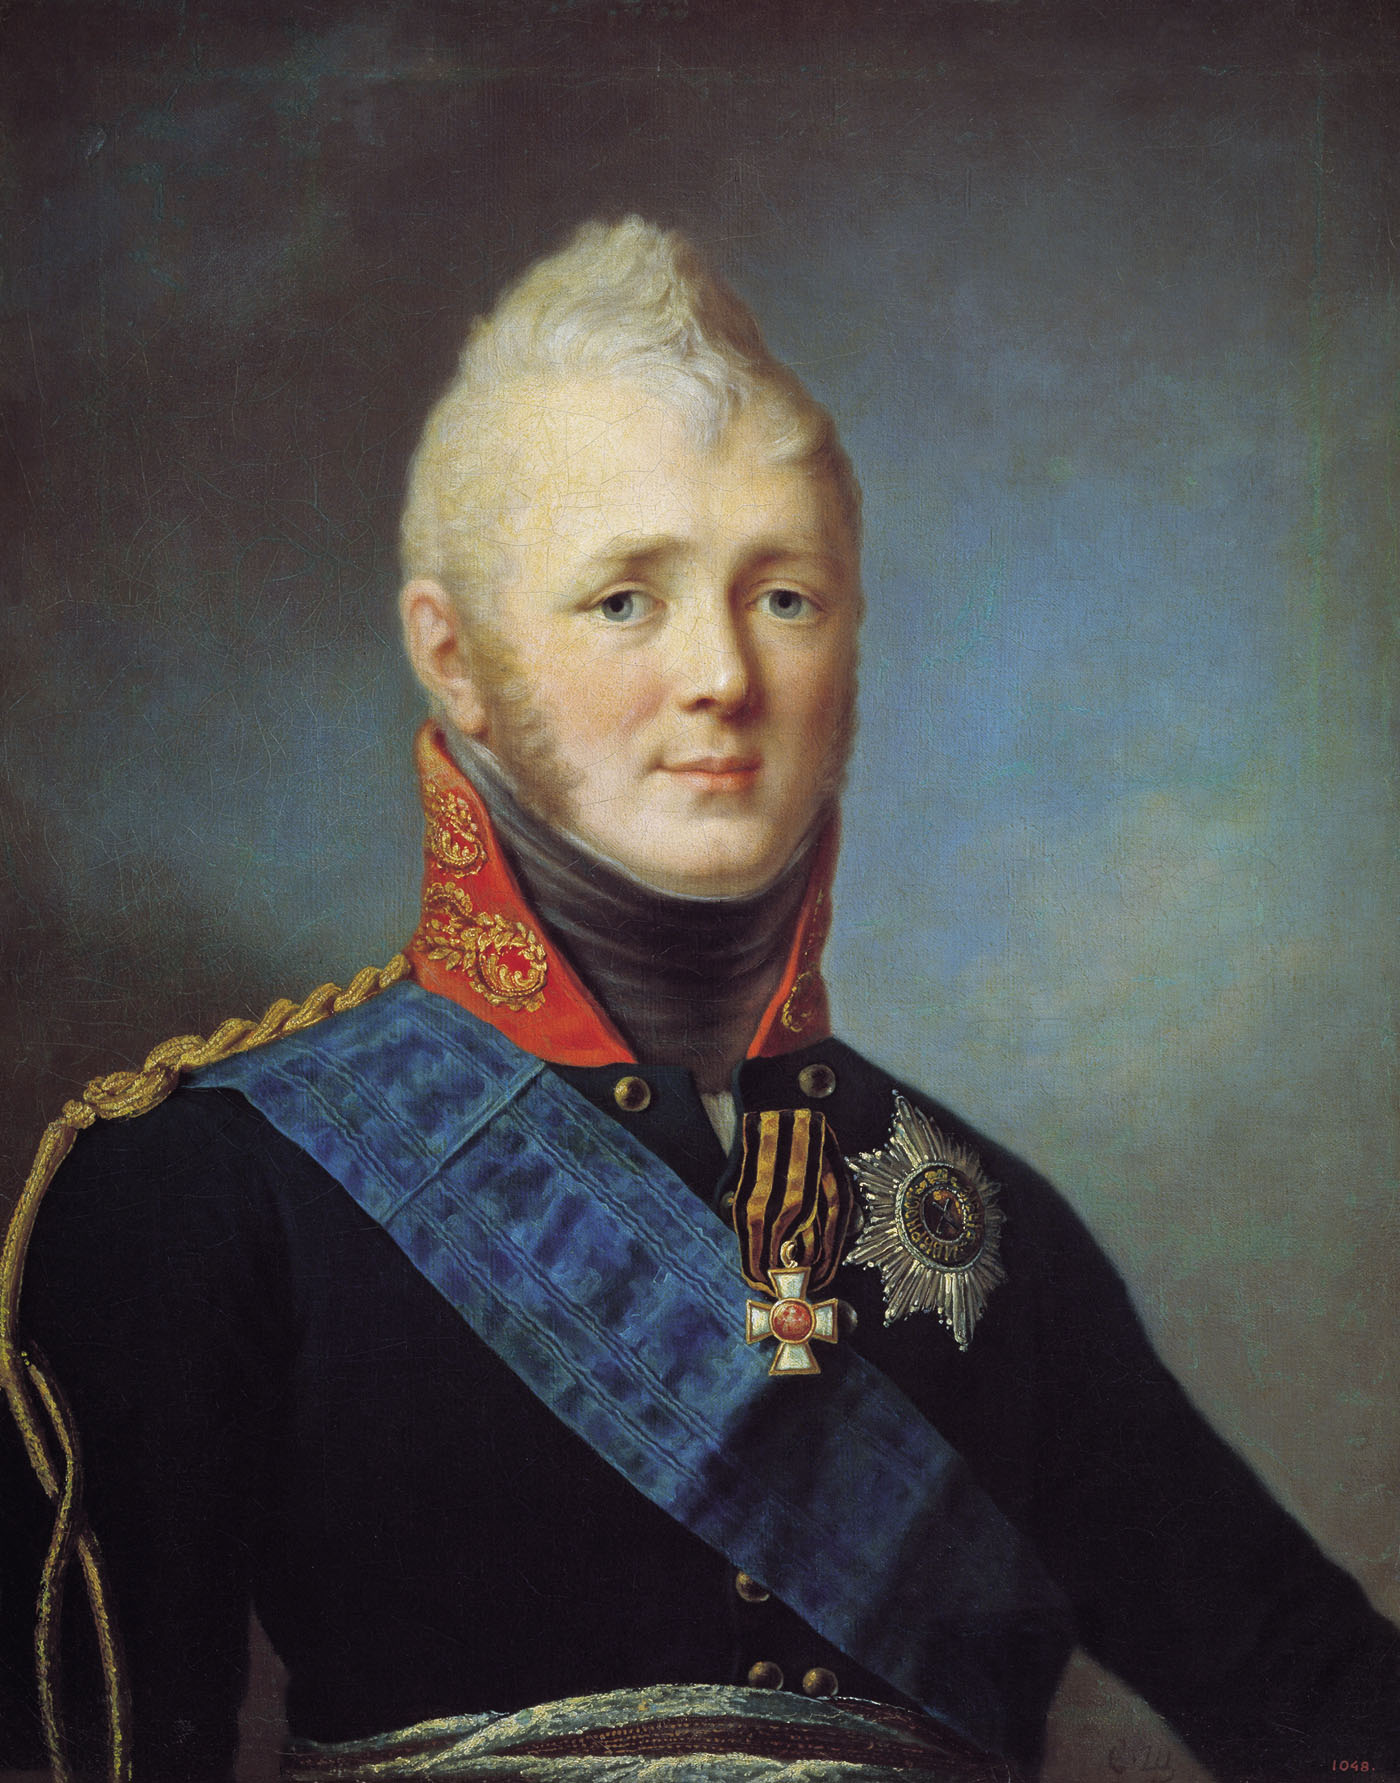 Щукин. Портрет Александра I. Начало 1800-х